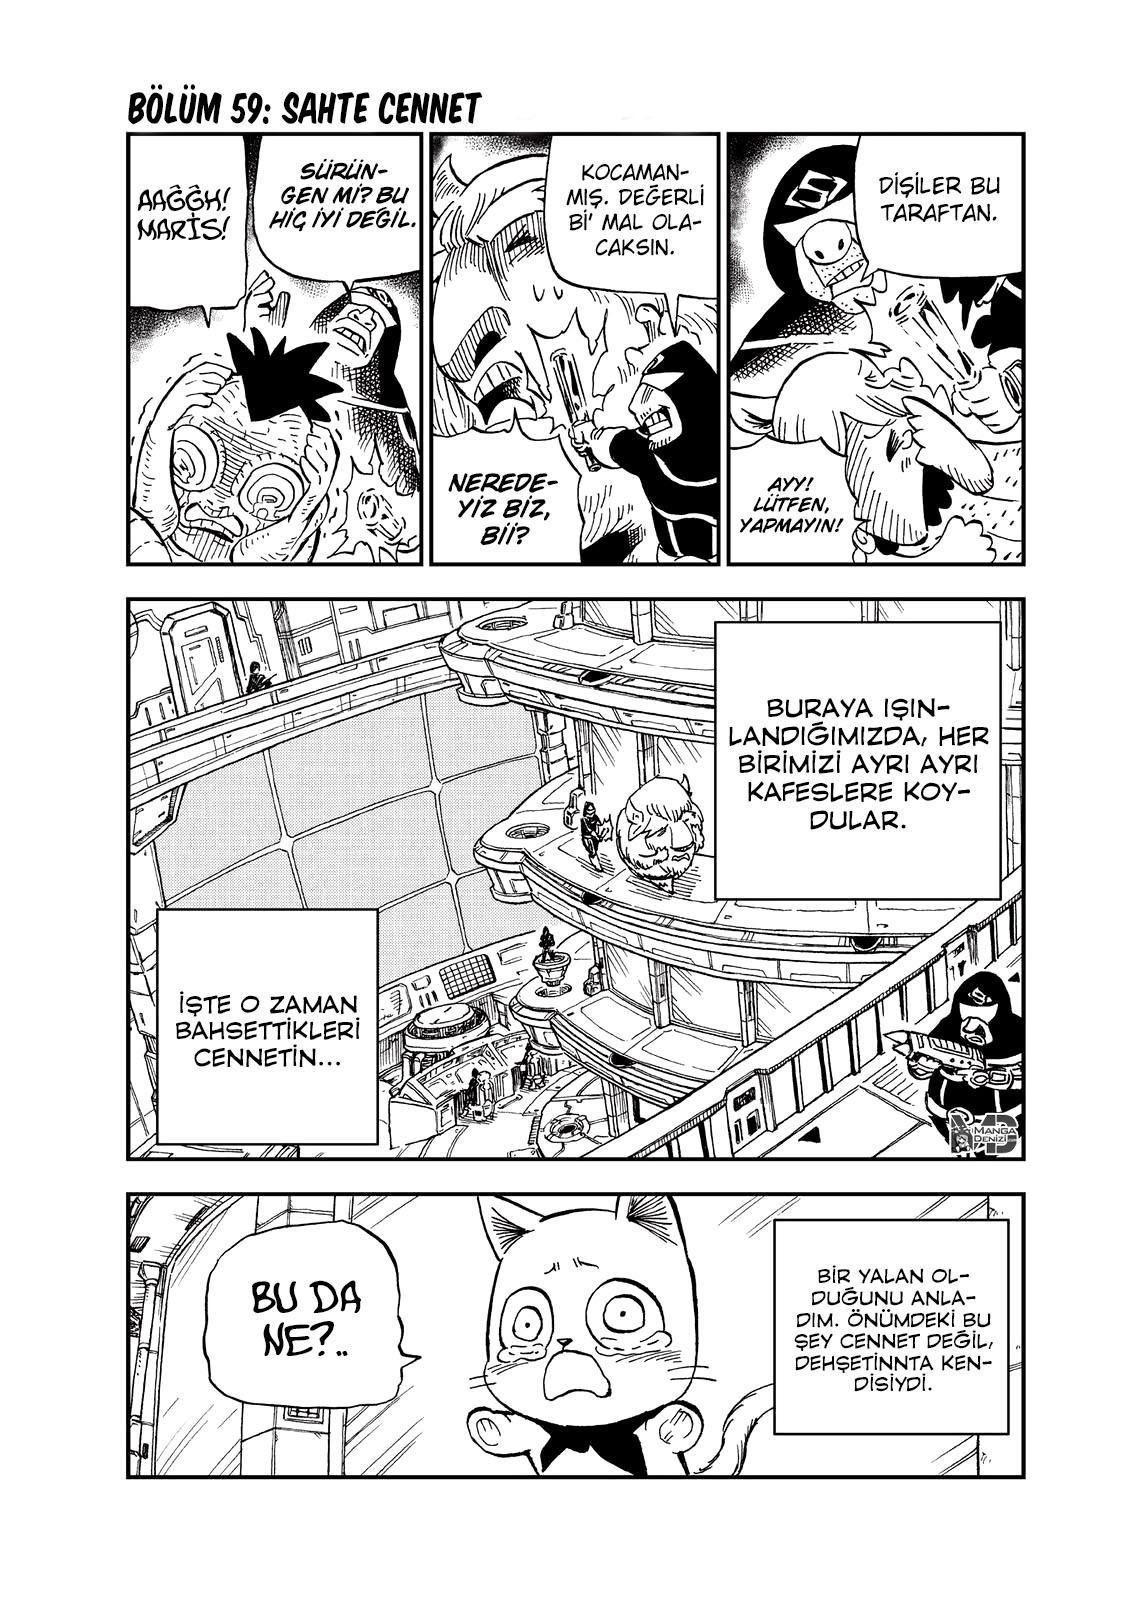 Fairy Tail: Happy's Great Adventure mangasının 59 bölümünün 2. sayfasını okuyorsunuz.